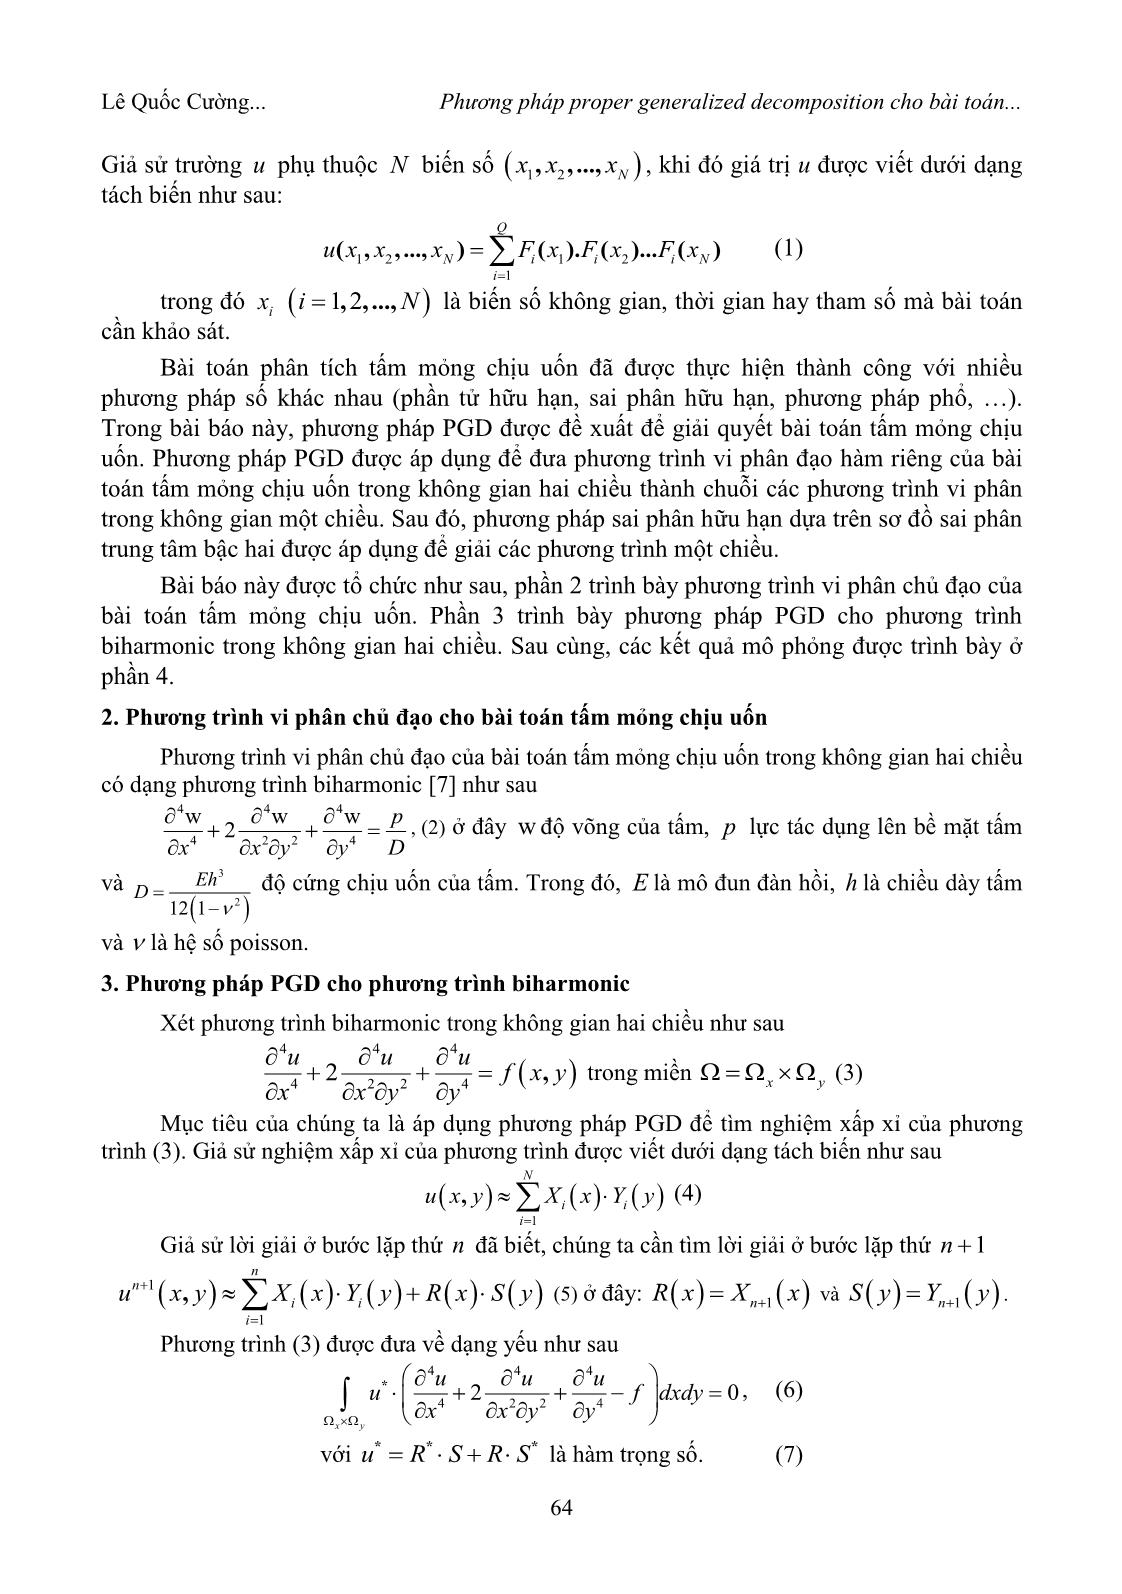 Phương pháp Proper Generalized Decomposition cho bài toán tấm mỏng chịu uốn trang 2